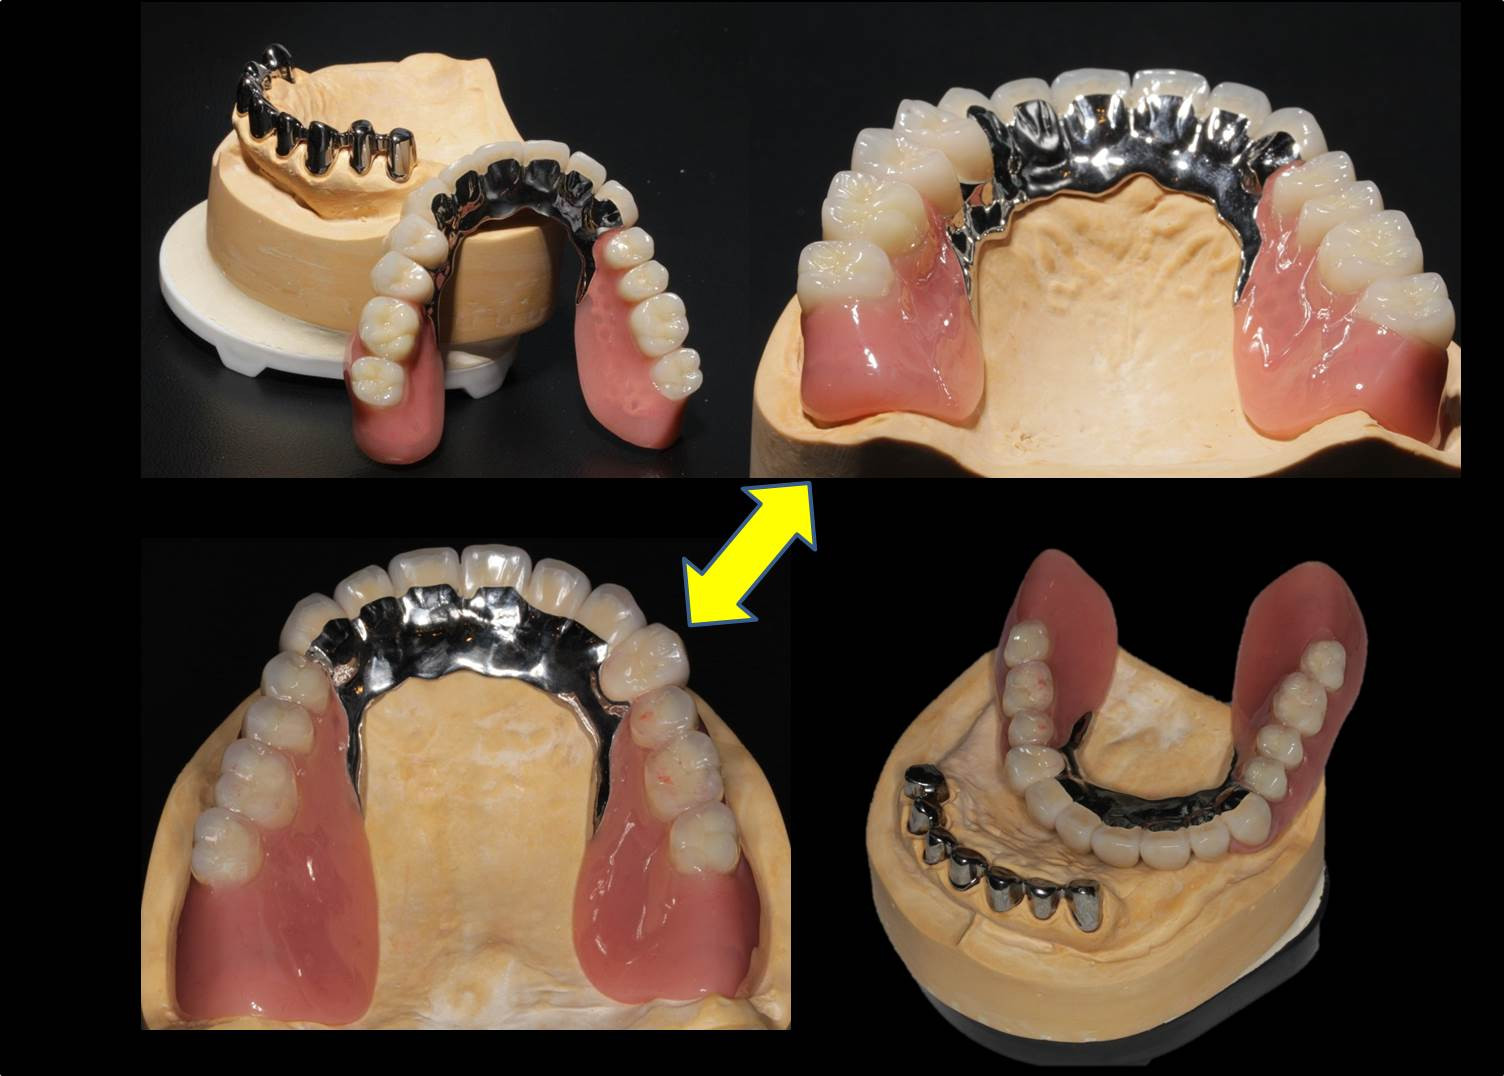 流山の歯科医院で「テレスコープ義歯」によるドイツ式入れ歯治療をご提案しております。